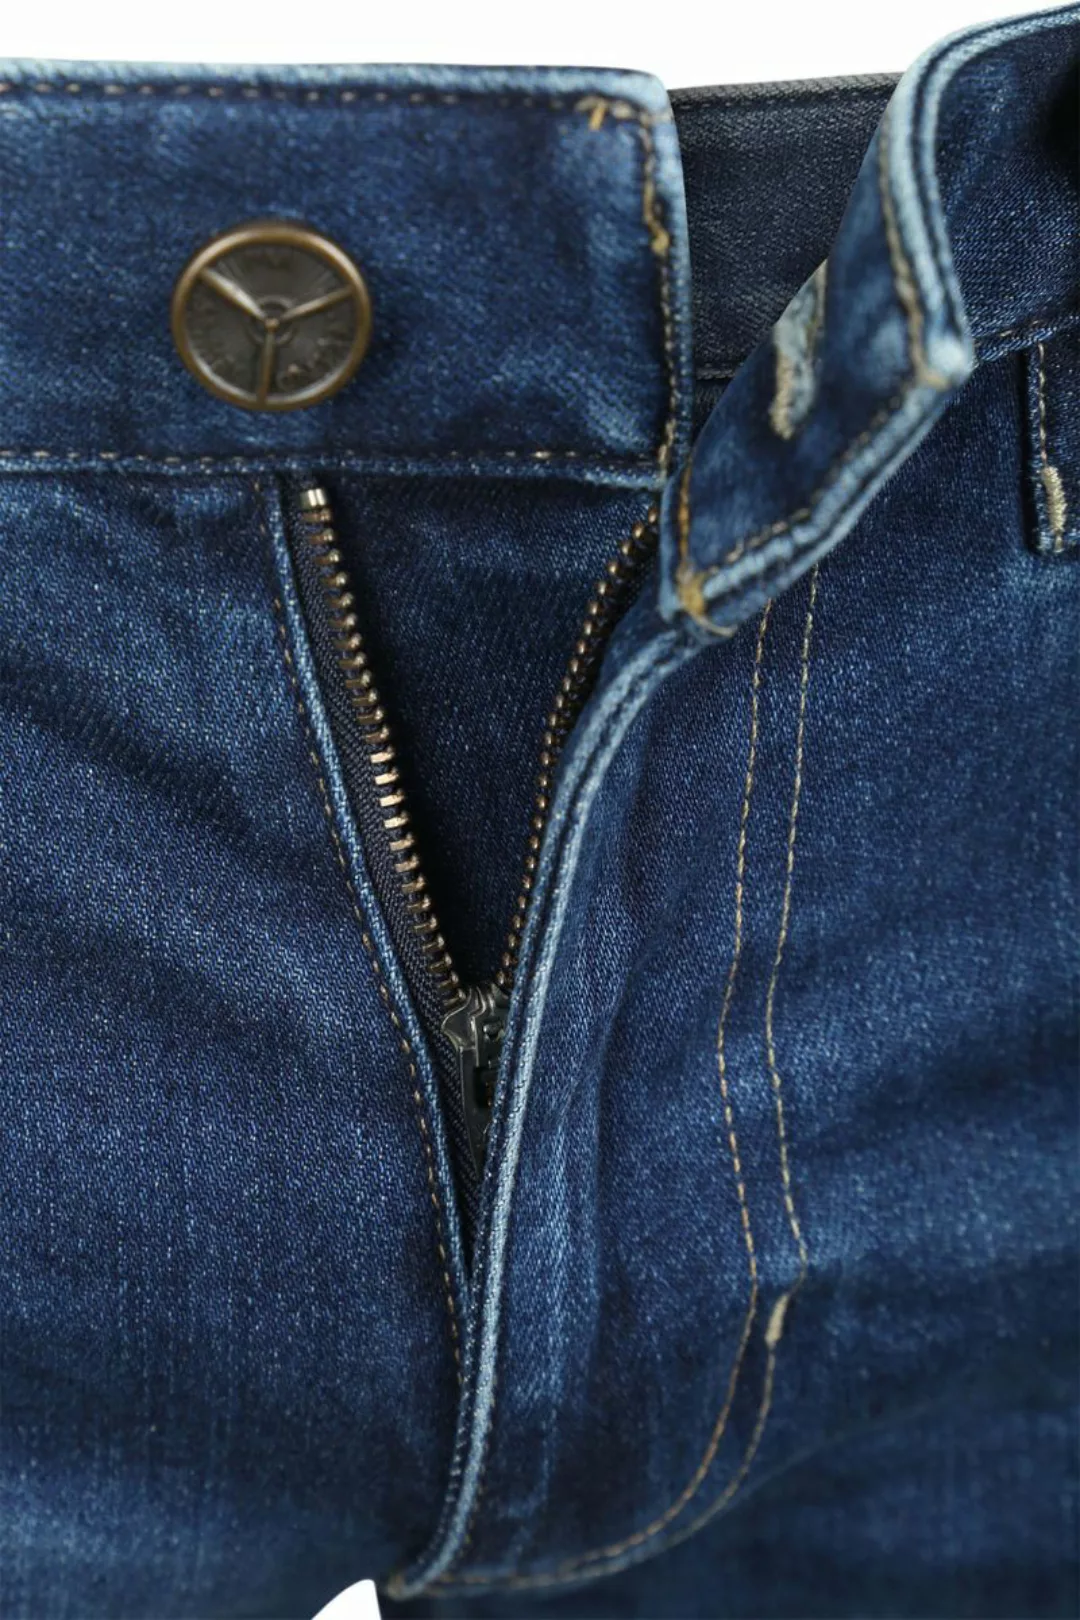 PME Legend Commander 3.0 Jeans Blau TBM - Größe W 38 - L 34 günstig online kaufen